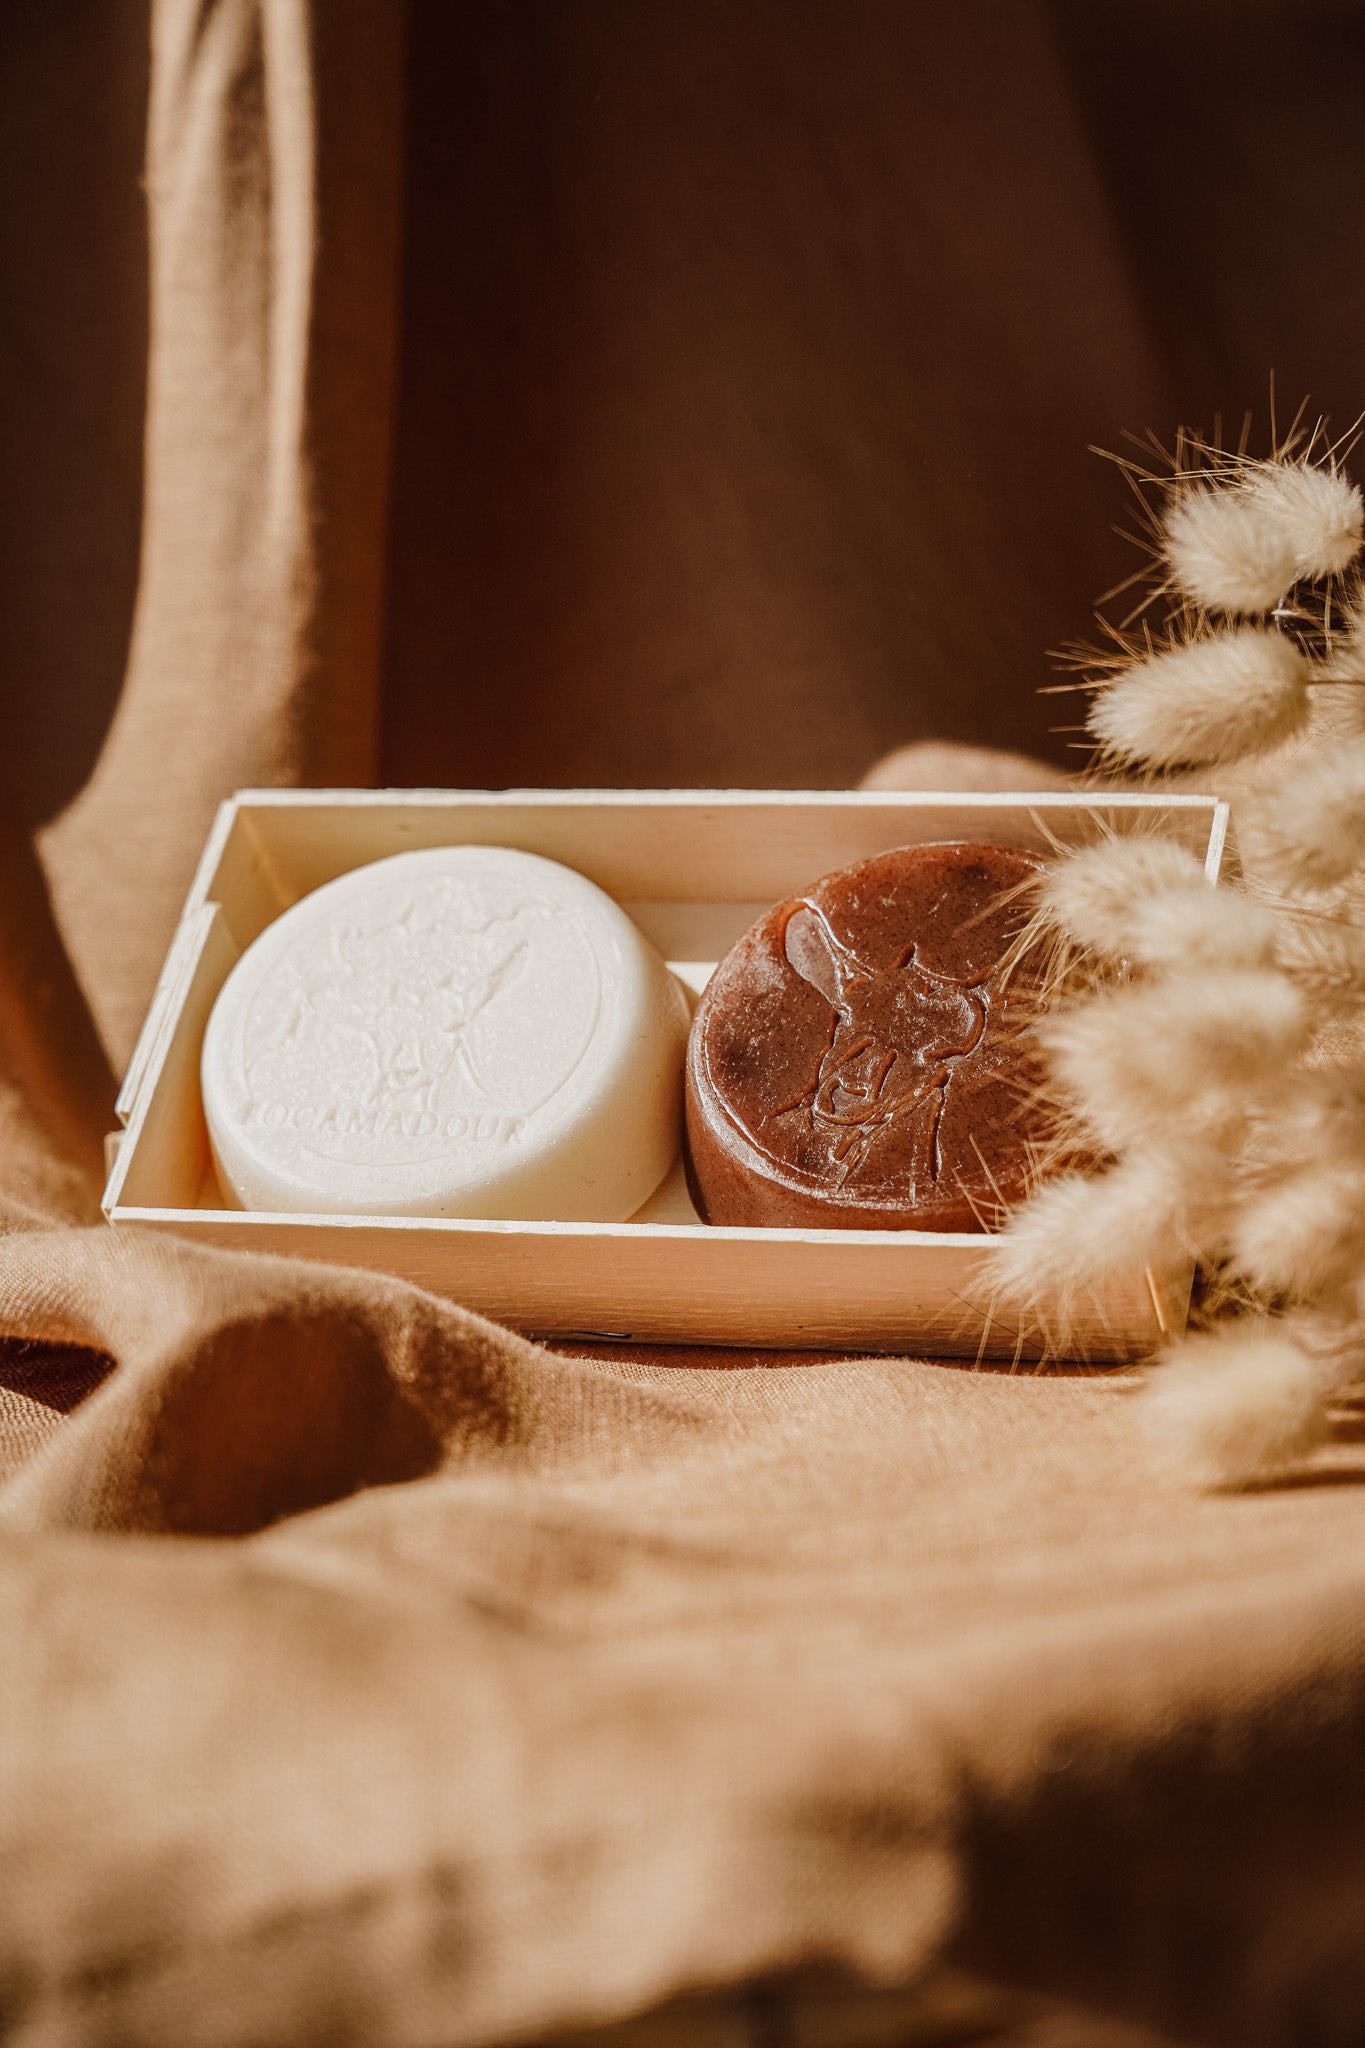 Savons et shampoing au lait de chèvre – Exquises Caprines : Savons et soins  au lait de chèvre